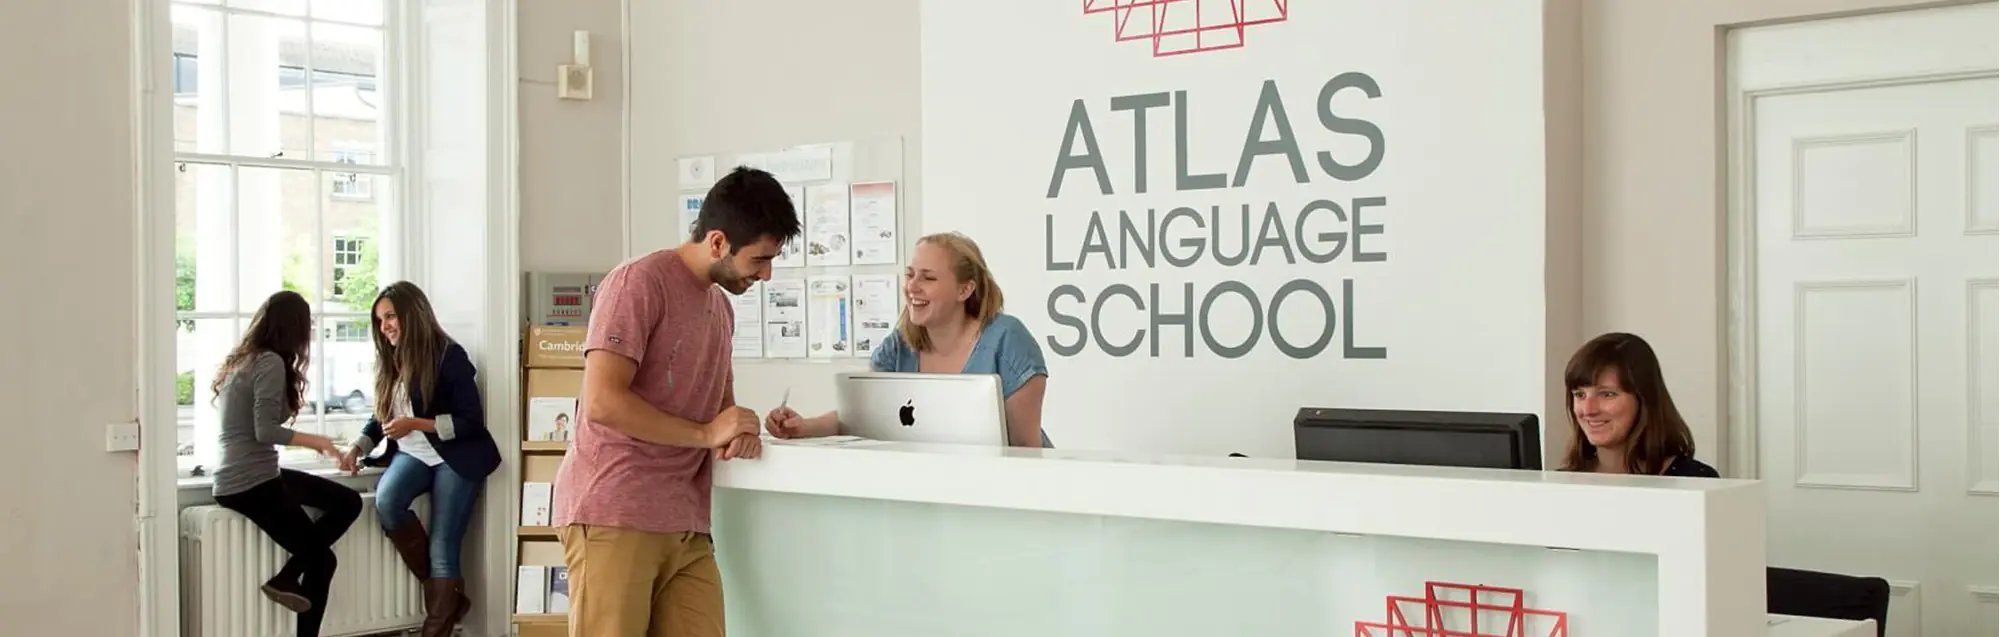 Valutazioni dei nostri ex studenti su Atlas Language School 